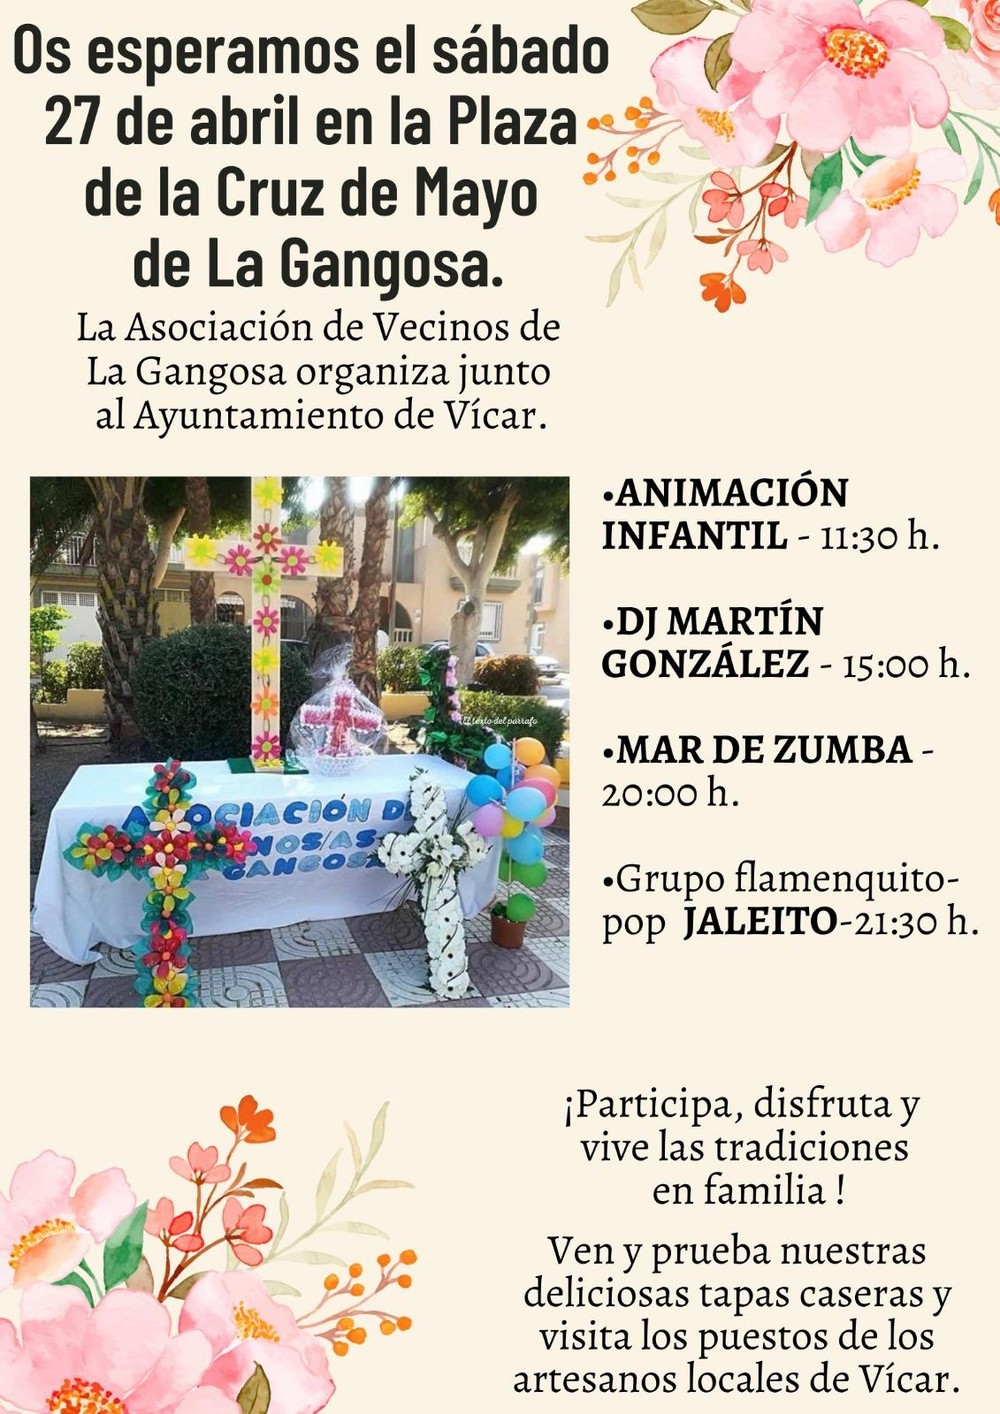 Música, deporte y convivencia en las Cruces de Mayo de La Gangosa